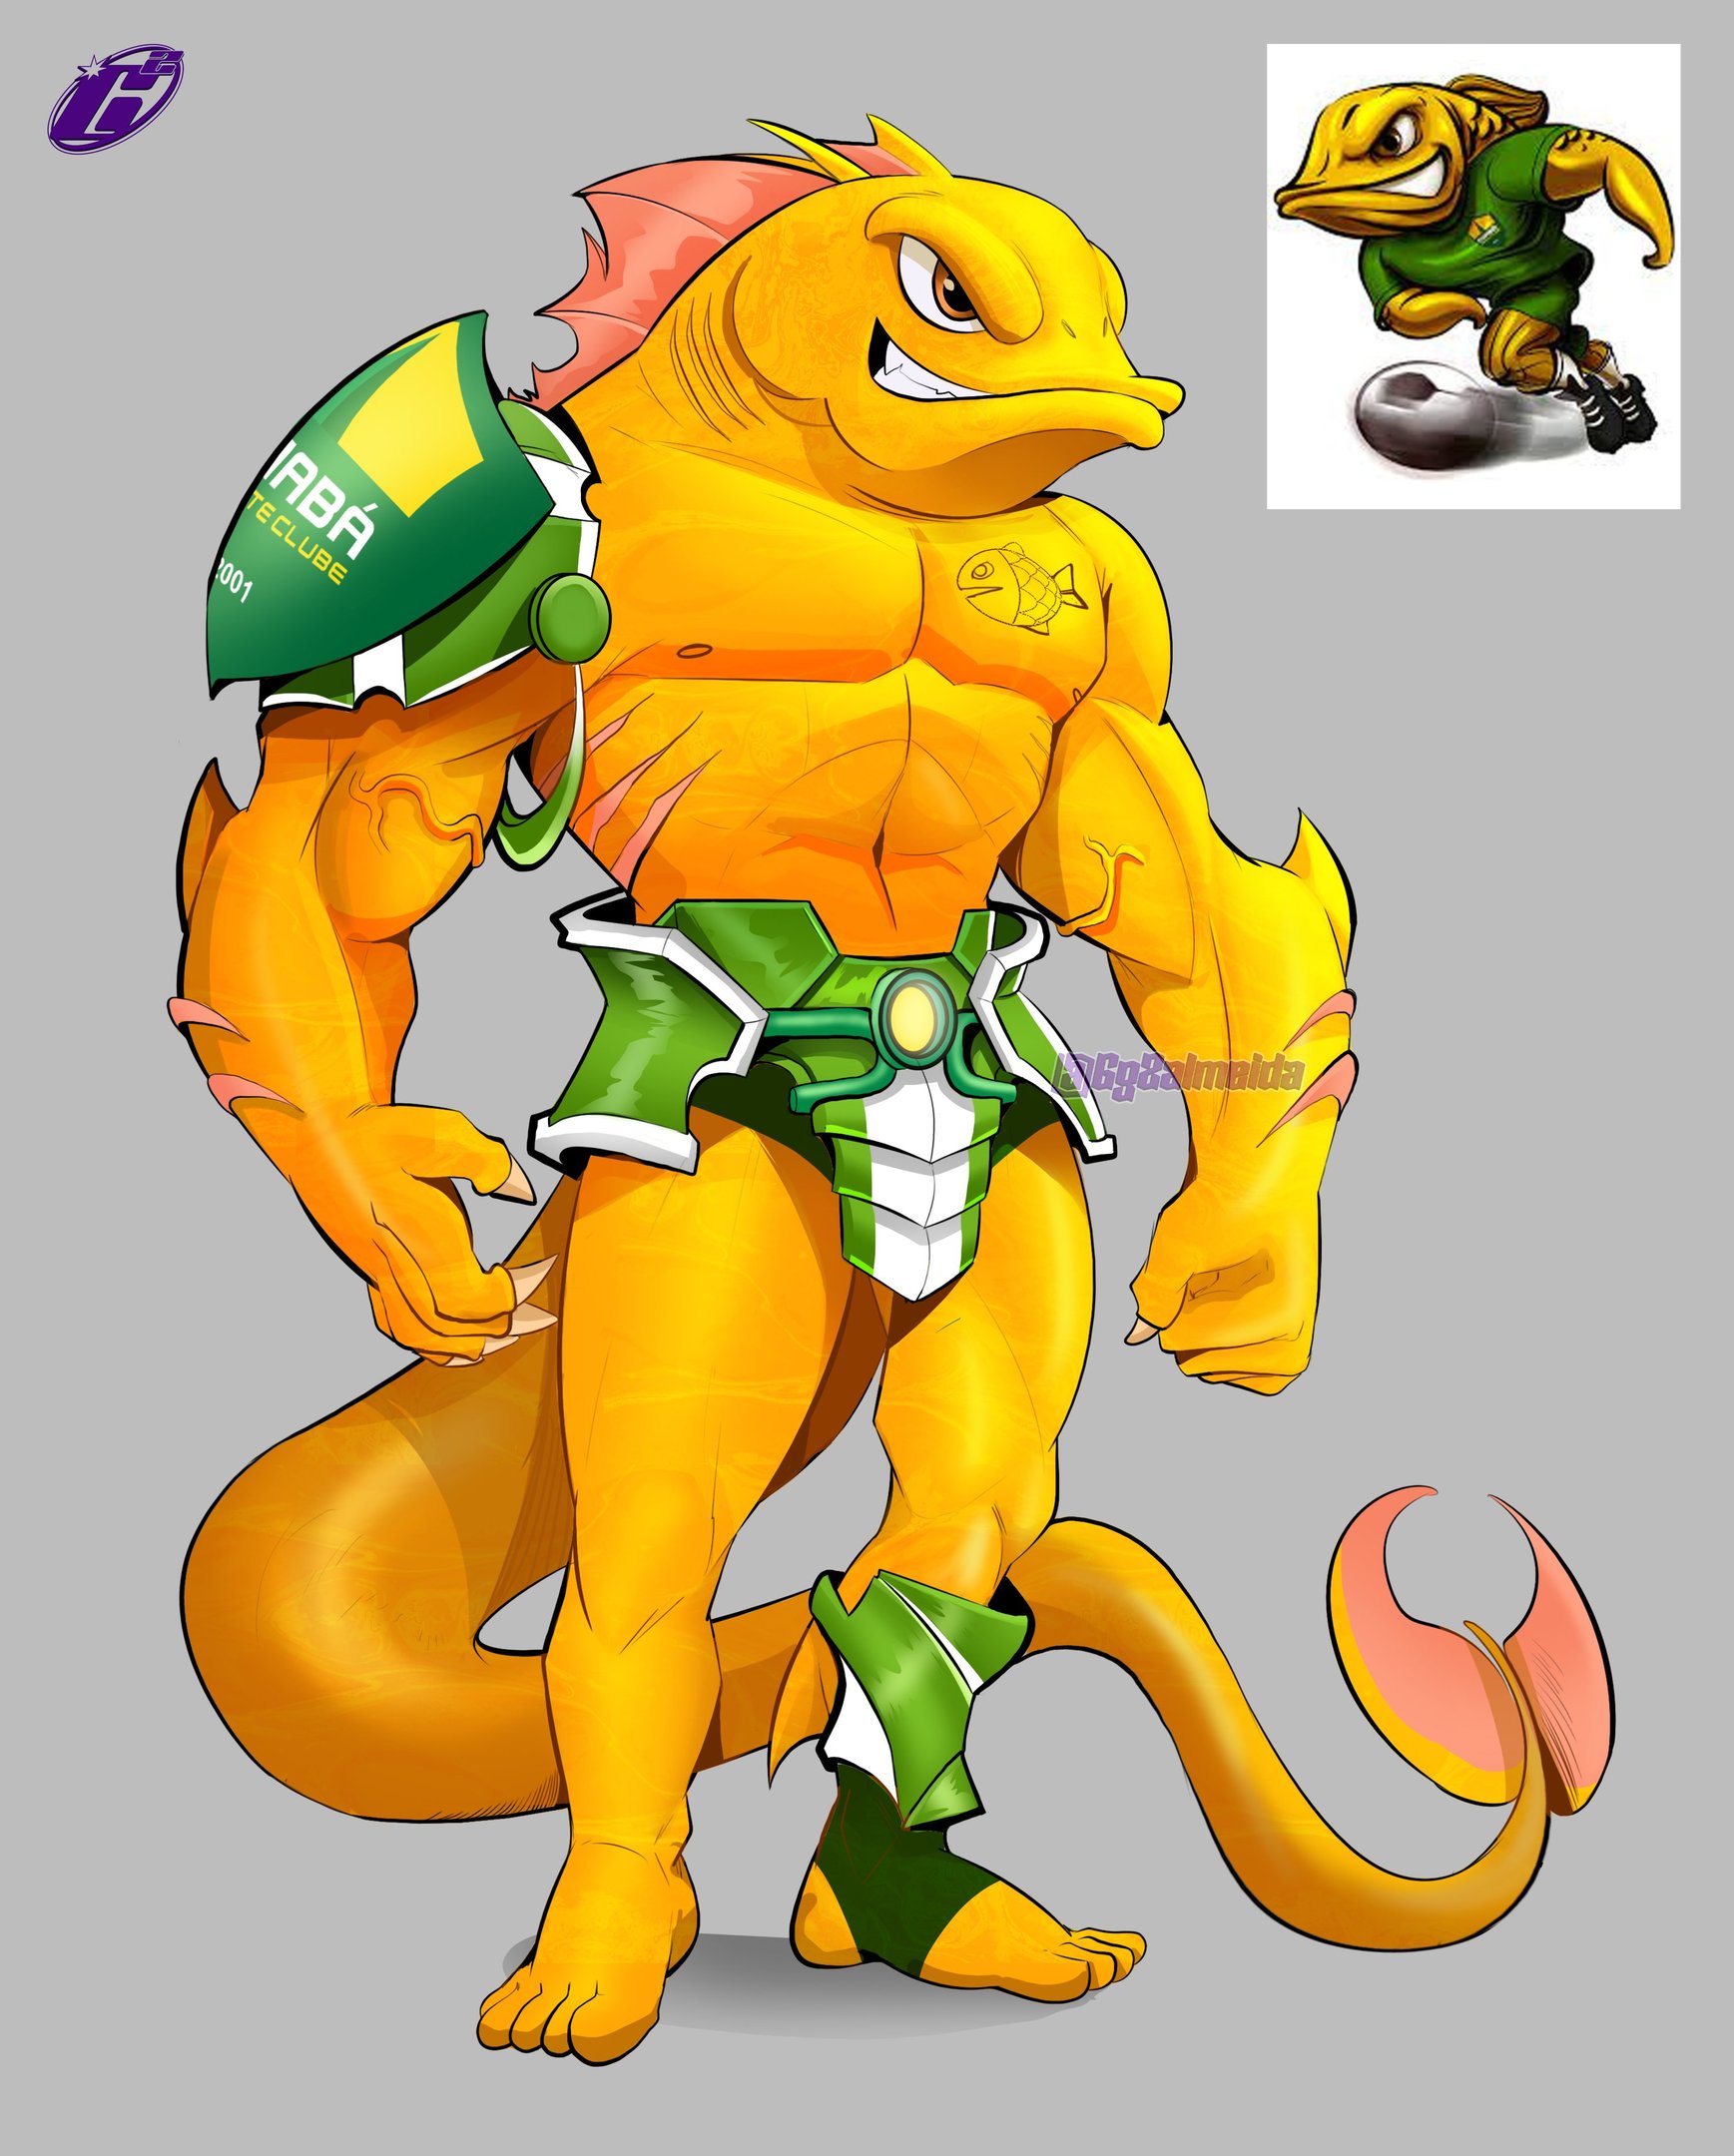 Versão personagem de jogo de luta do Peixe Dourado, mascote do Cuiabá Esporte Clube - Imagem: @Gg2almeida